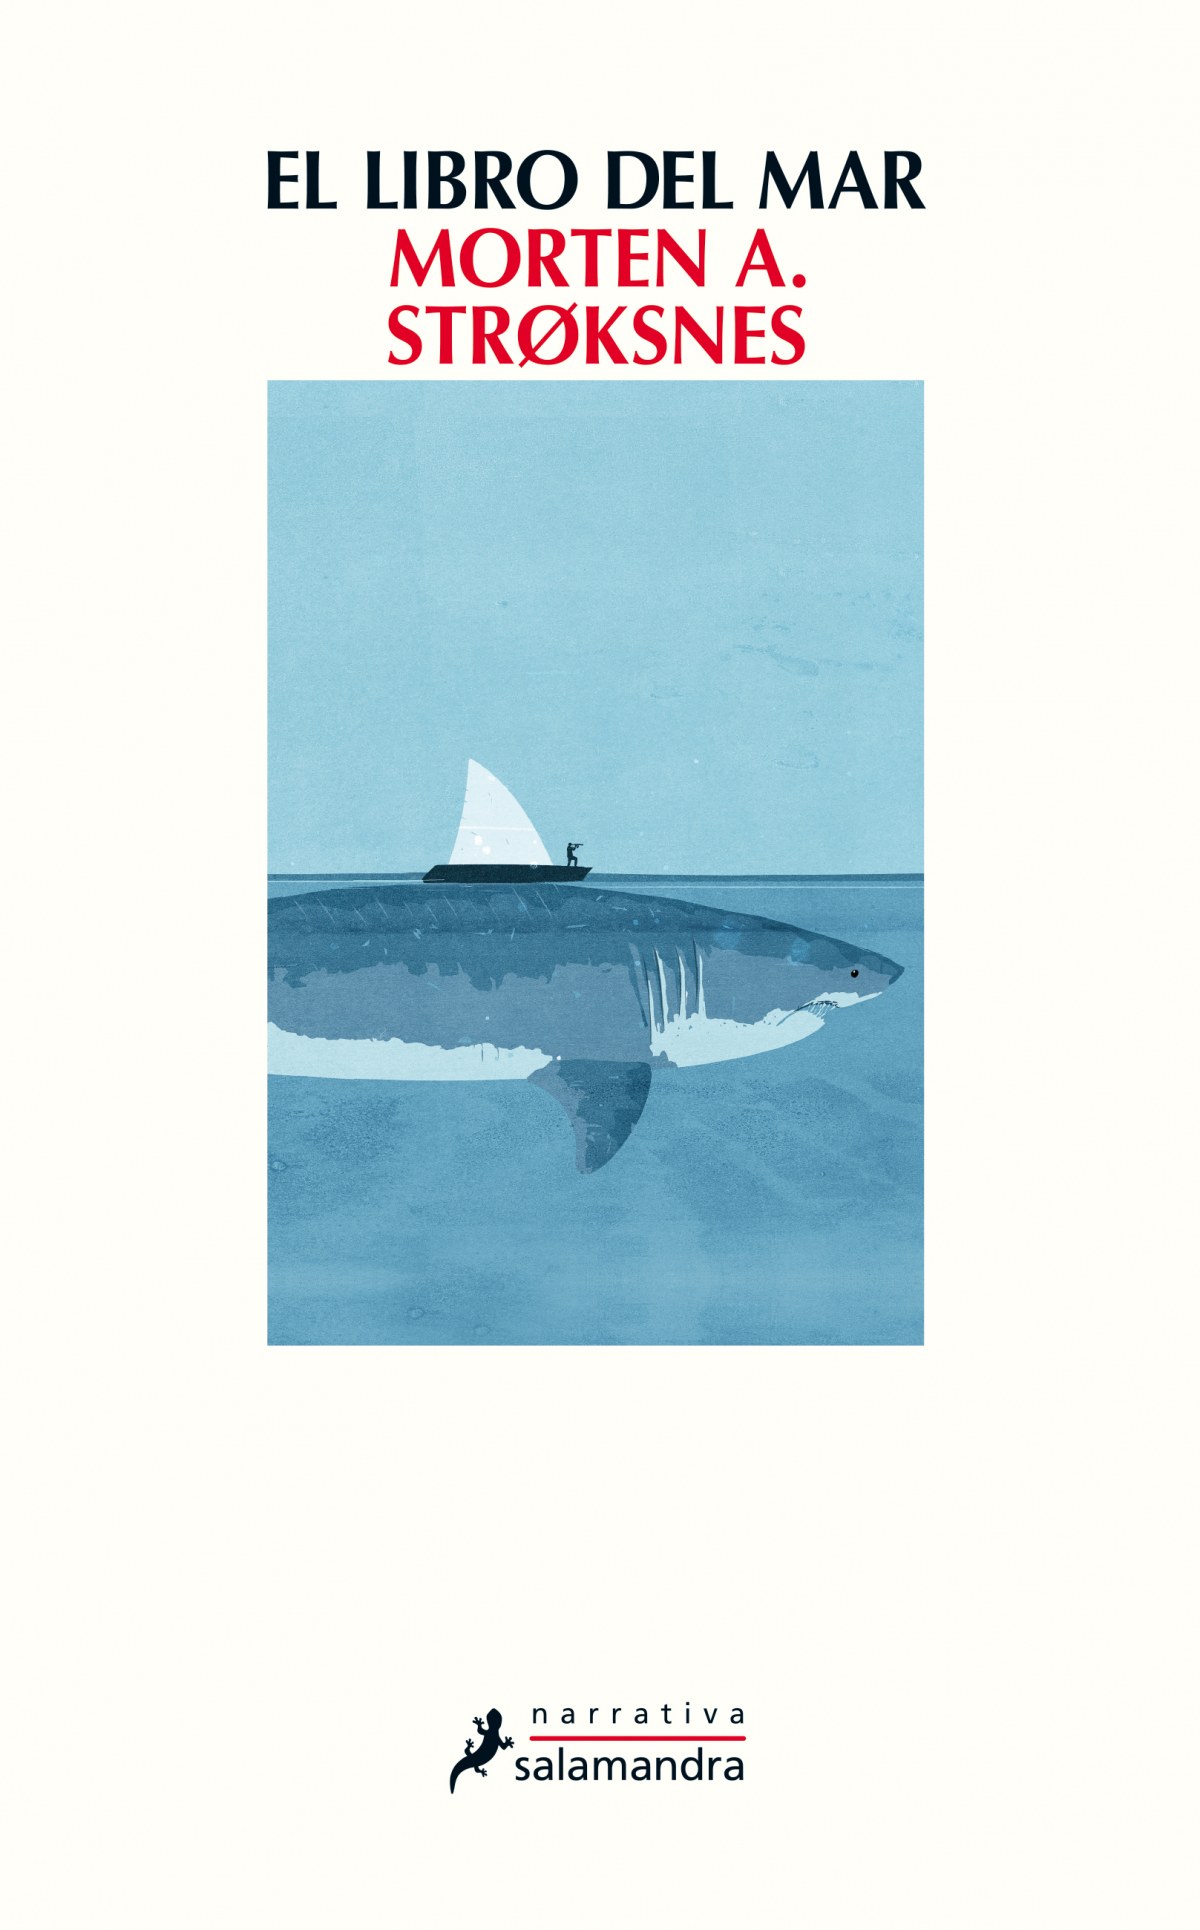 El libro del mar - Stroksnes, Morten A.